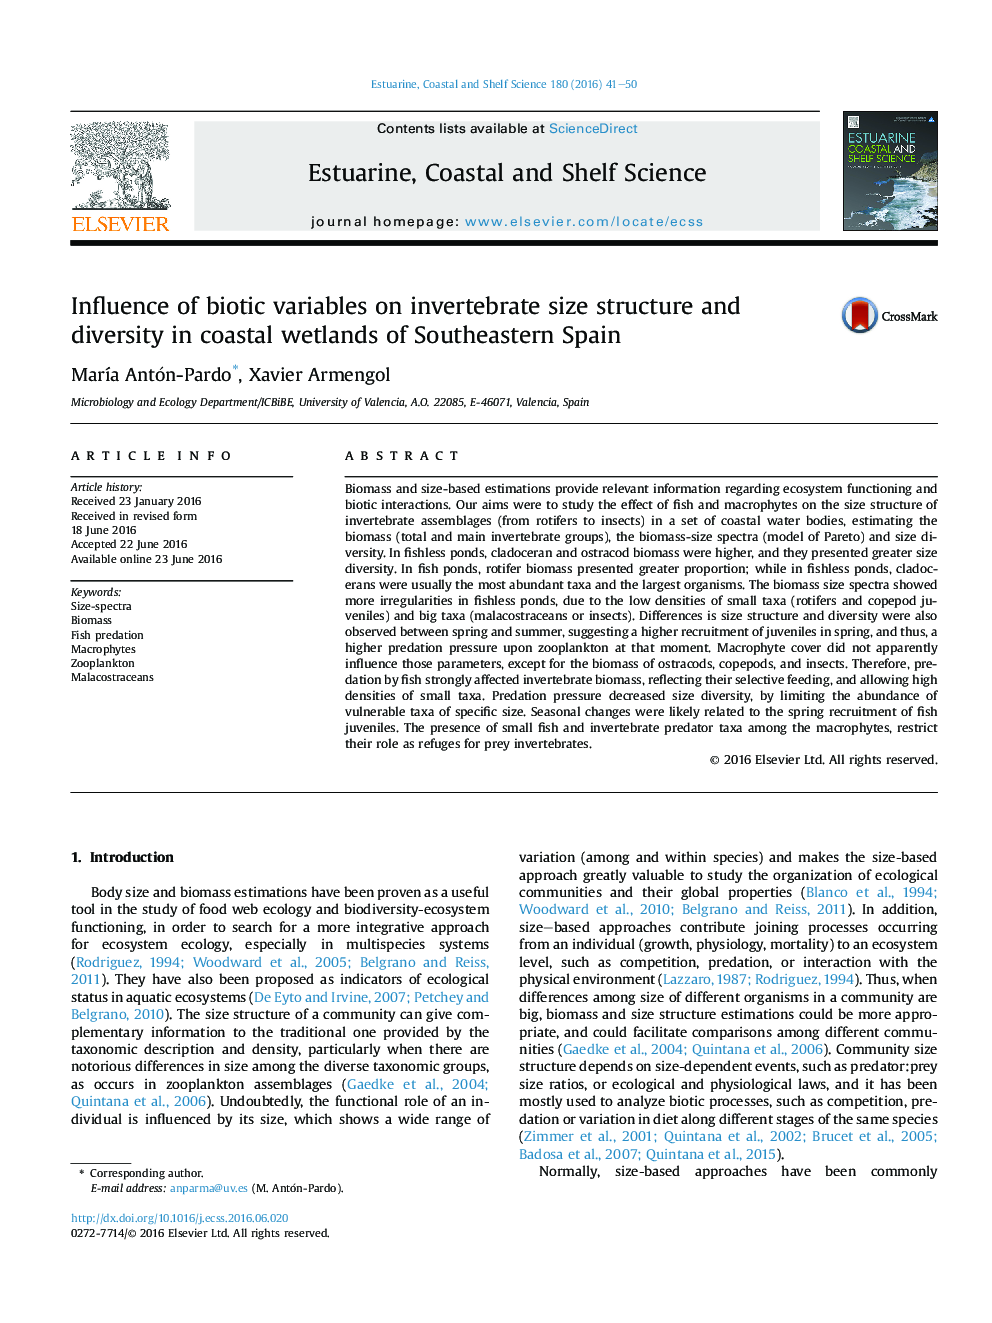 تأثیر متغیرهای زیست محیطی بر ساختار اندازه های غیرمترقبه و تنوع در تالاب های ساحلی جنوب شرقی اسپانیا 